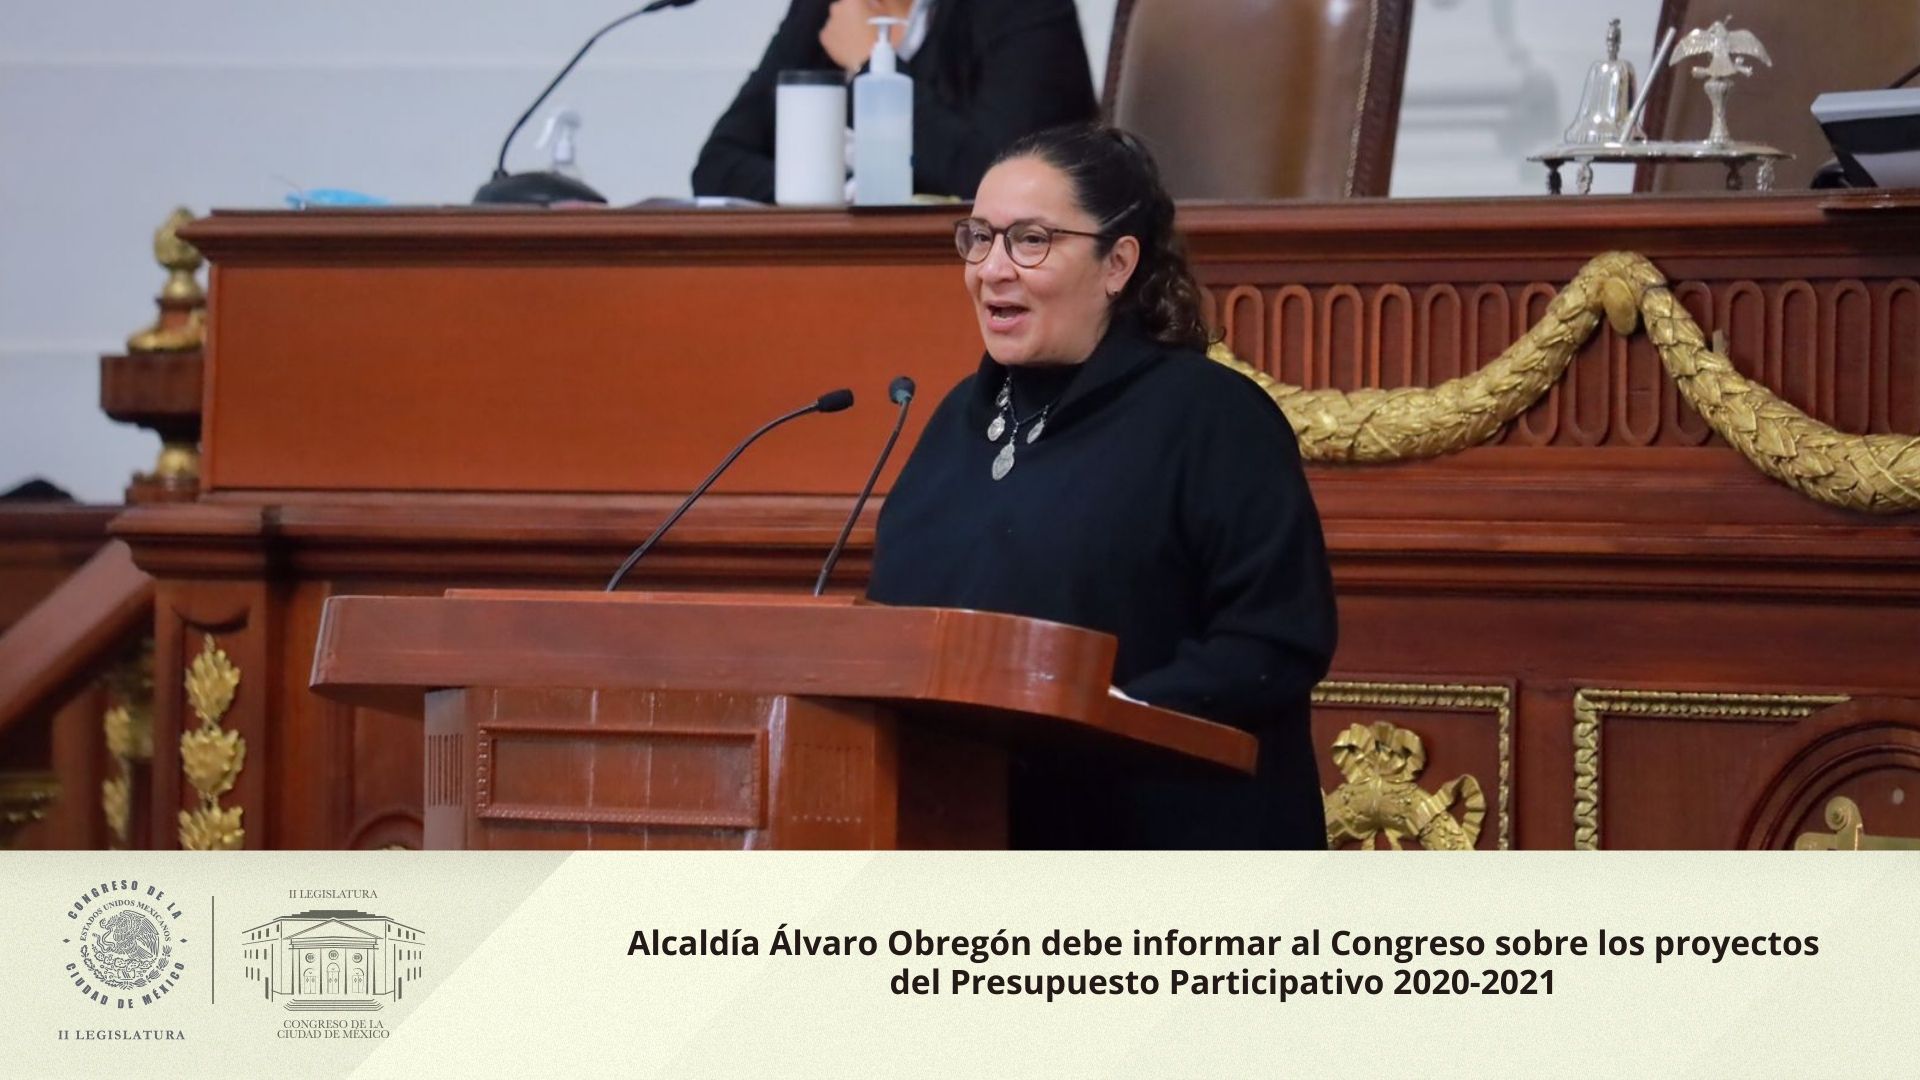 Alcaldía Álvaro Obregón debe informar al Congreso sobre los proyectos del Presupuesto Participativo 2020-2021